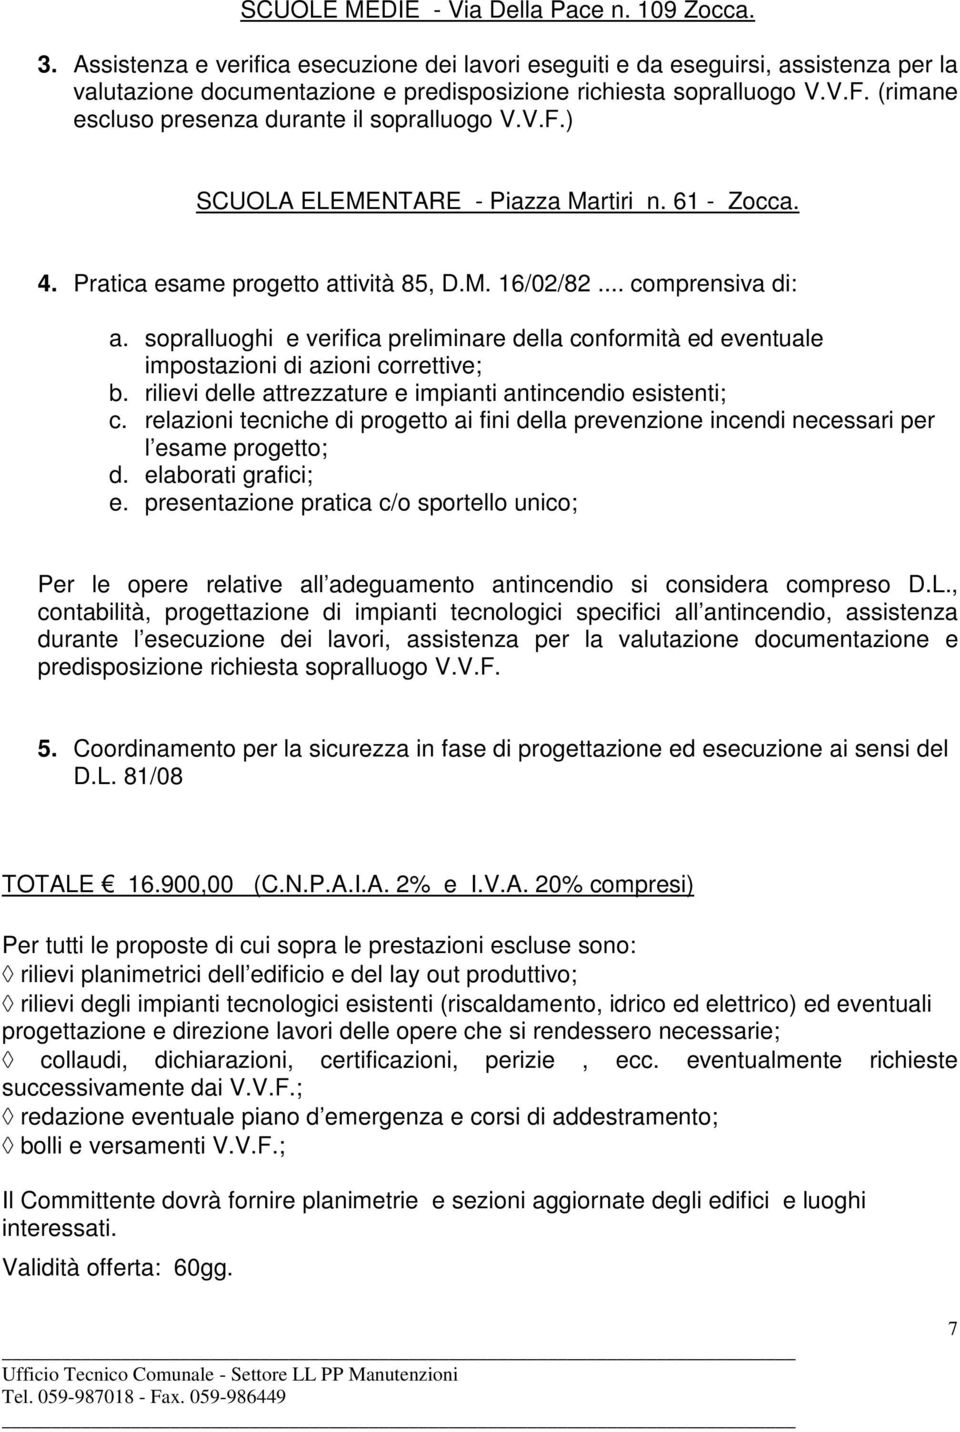 (rimane escluso presenza durante il sopralluogo V.V.F.) SCUOLA ELEMENTARE - Piazza Martiri n. 61 - Zocca. 4. Pratica esame progetto attività 85, D.M. 16/02/82... comprensiva di: a.